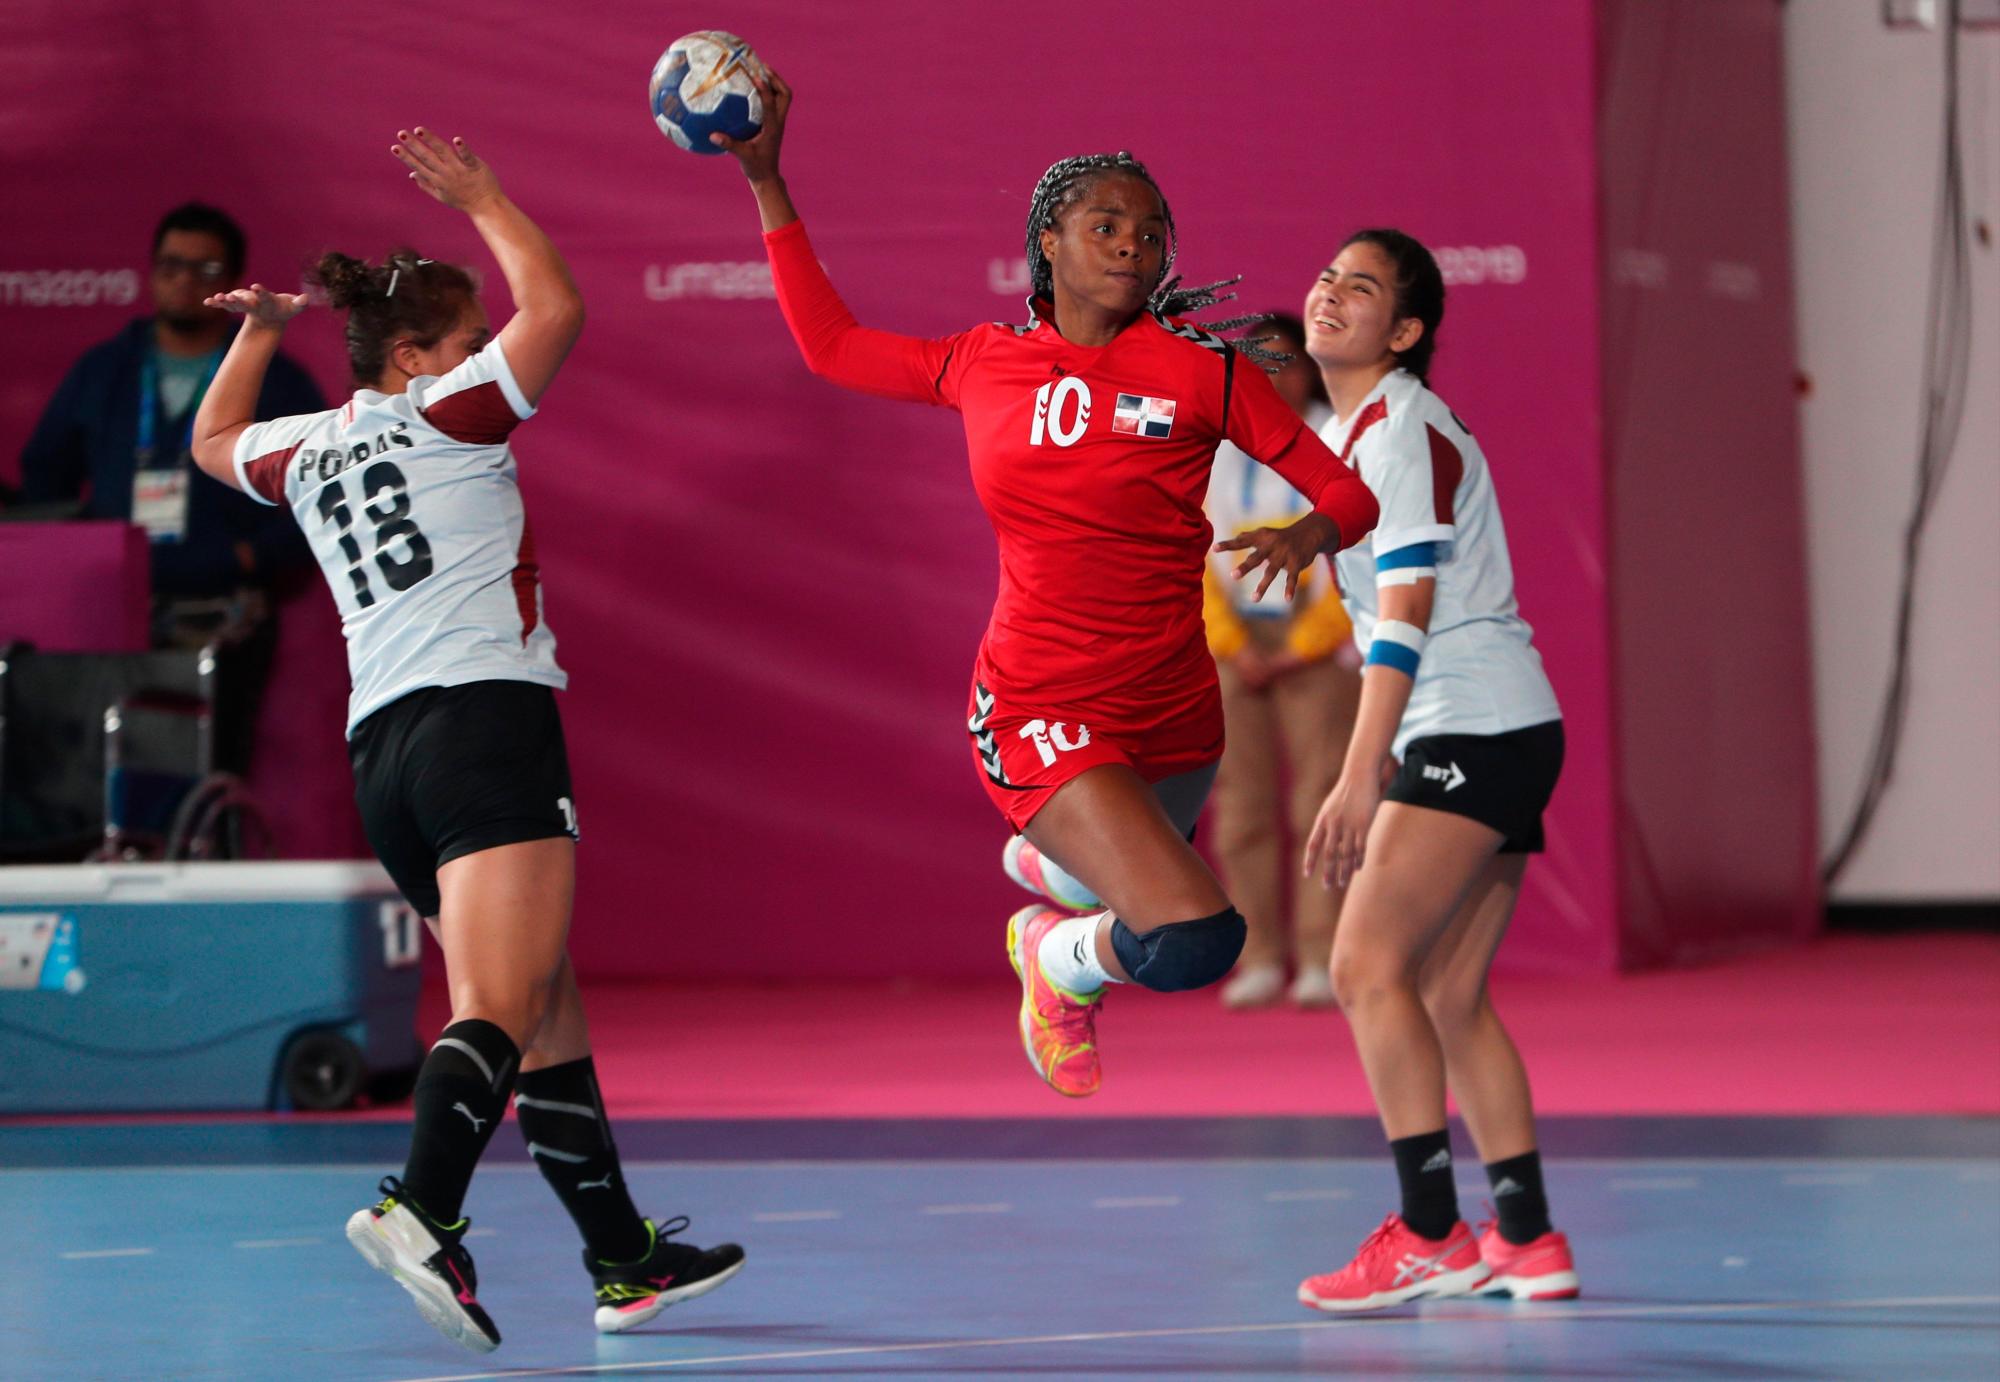 Carina Lorenzo (c) de Dominicana ataca durante un partido de la ronda preliminar de balonmano femenino entre R.Dominicana y Perú en la primera jornada de los Juegos Panamericanos Lima 2019, en Lima (Perú). Los Juegos Panamericanos se disputarán del 26 de julio al 11 de agosto.